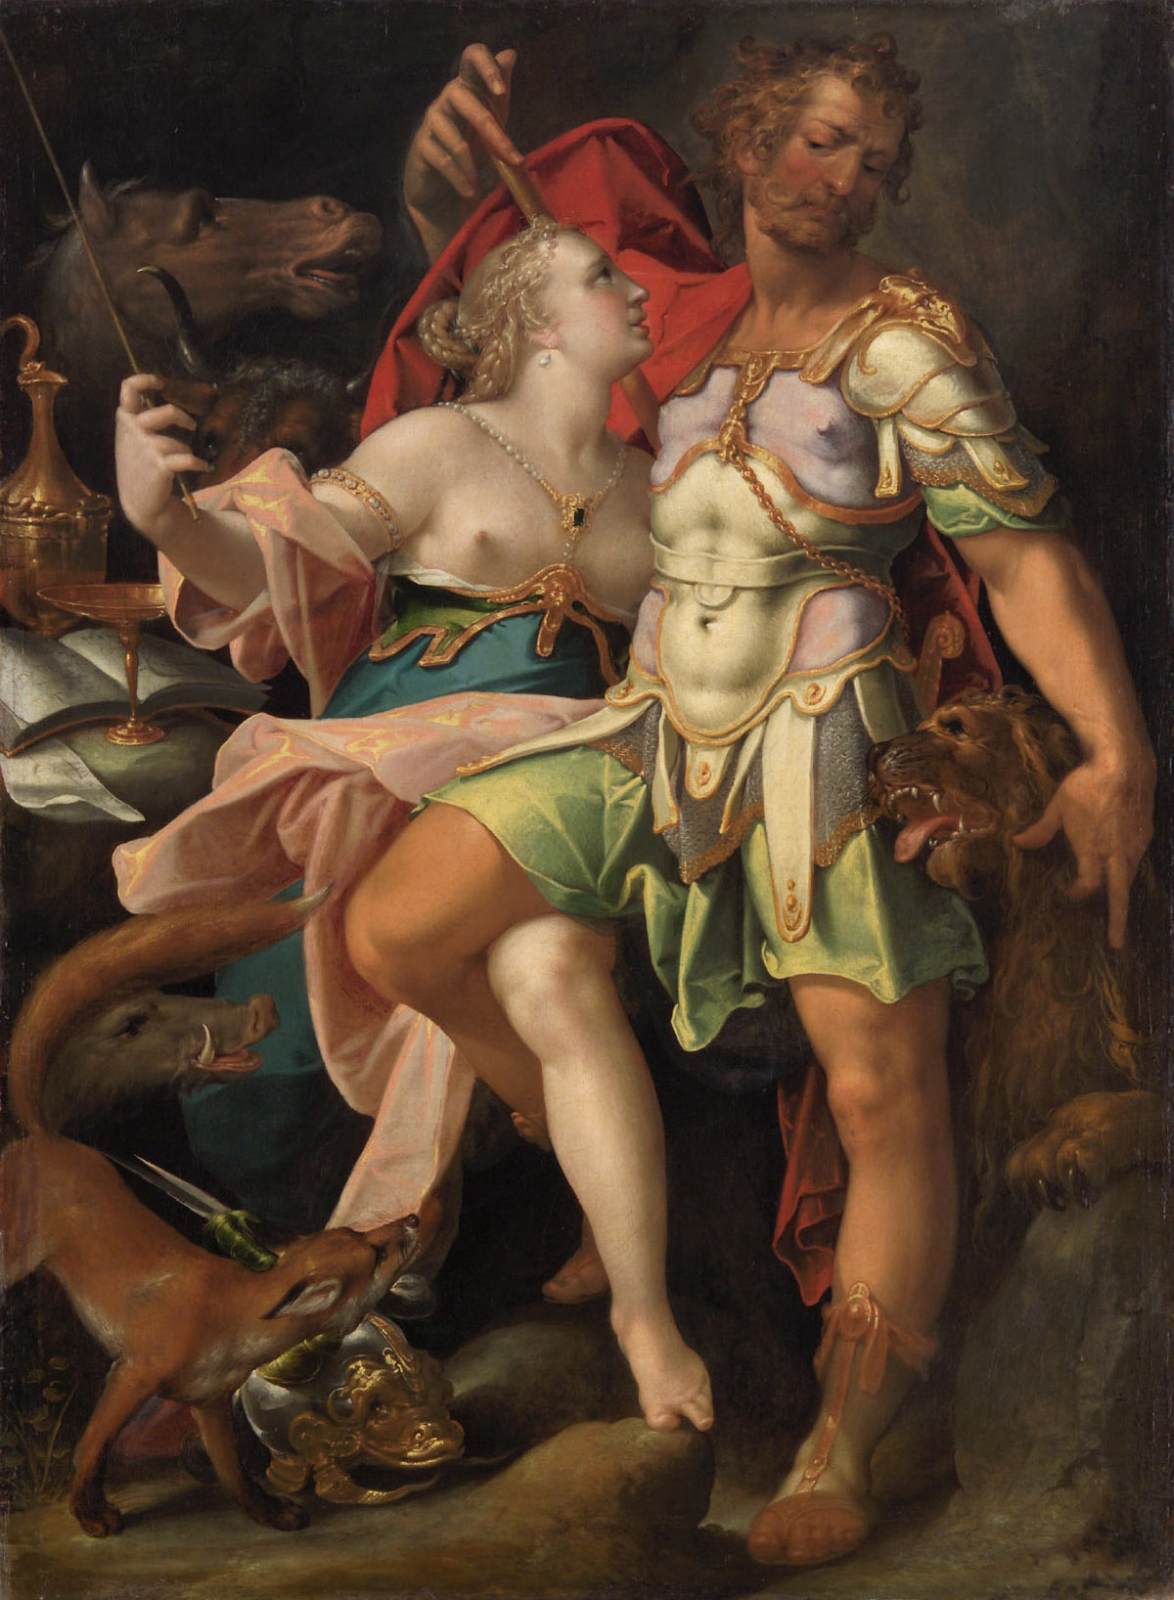 אודיסאוס וסירס